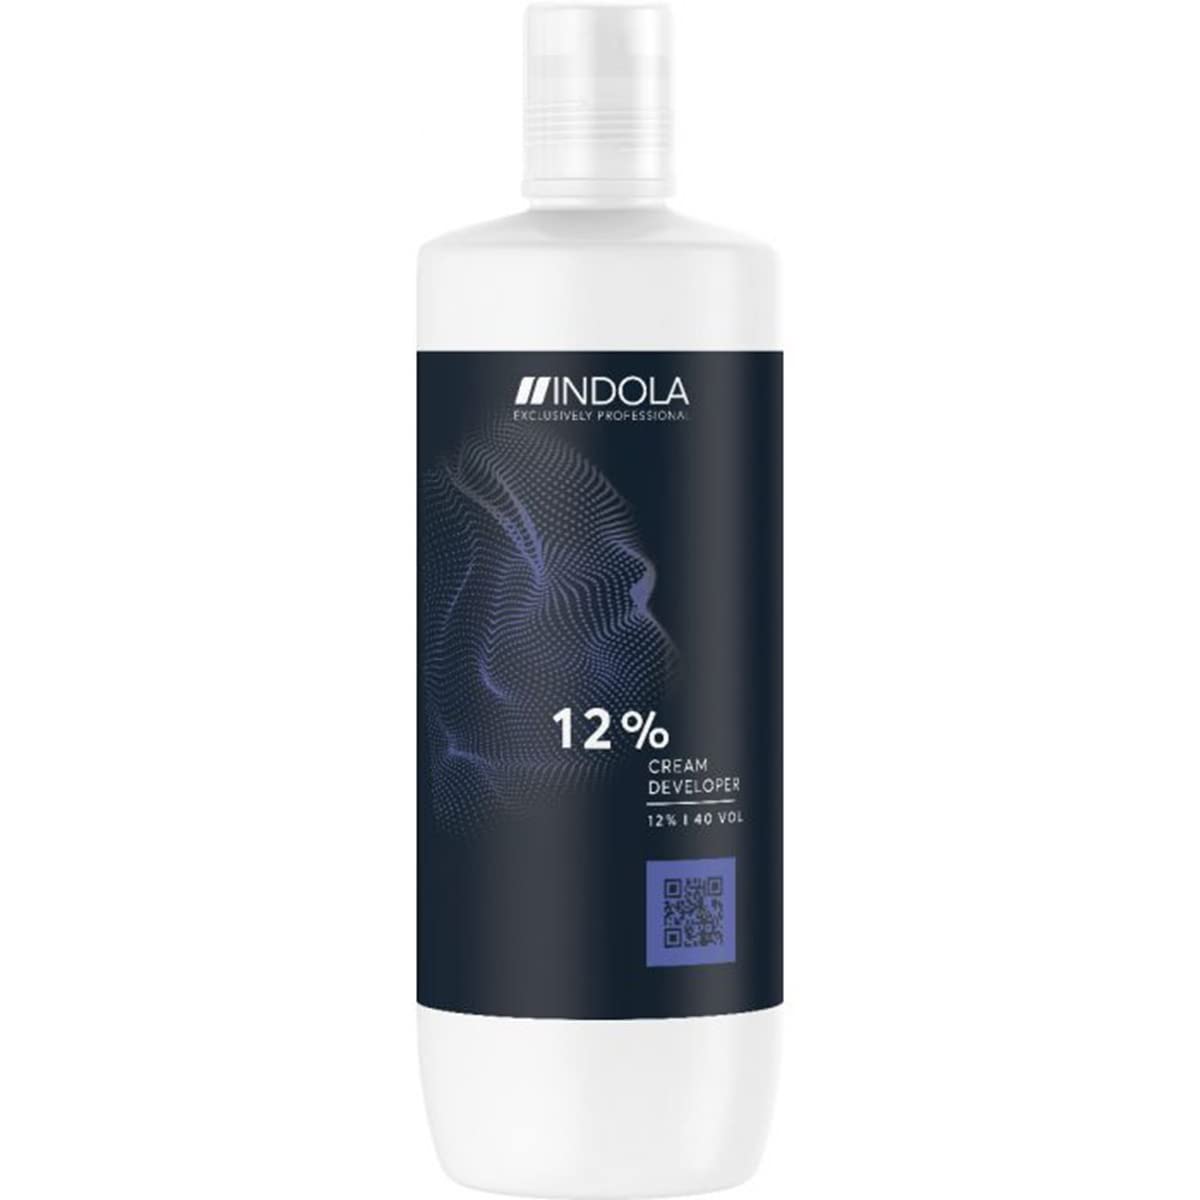 Indola Profession Cream Developer Haarfärbemittel, 12%, 40 Vol, 1000 ml